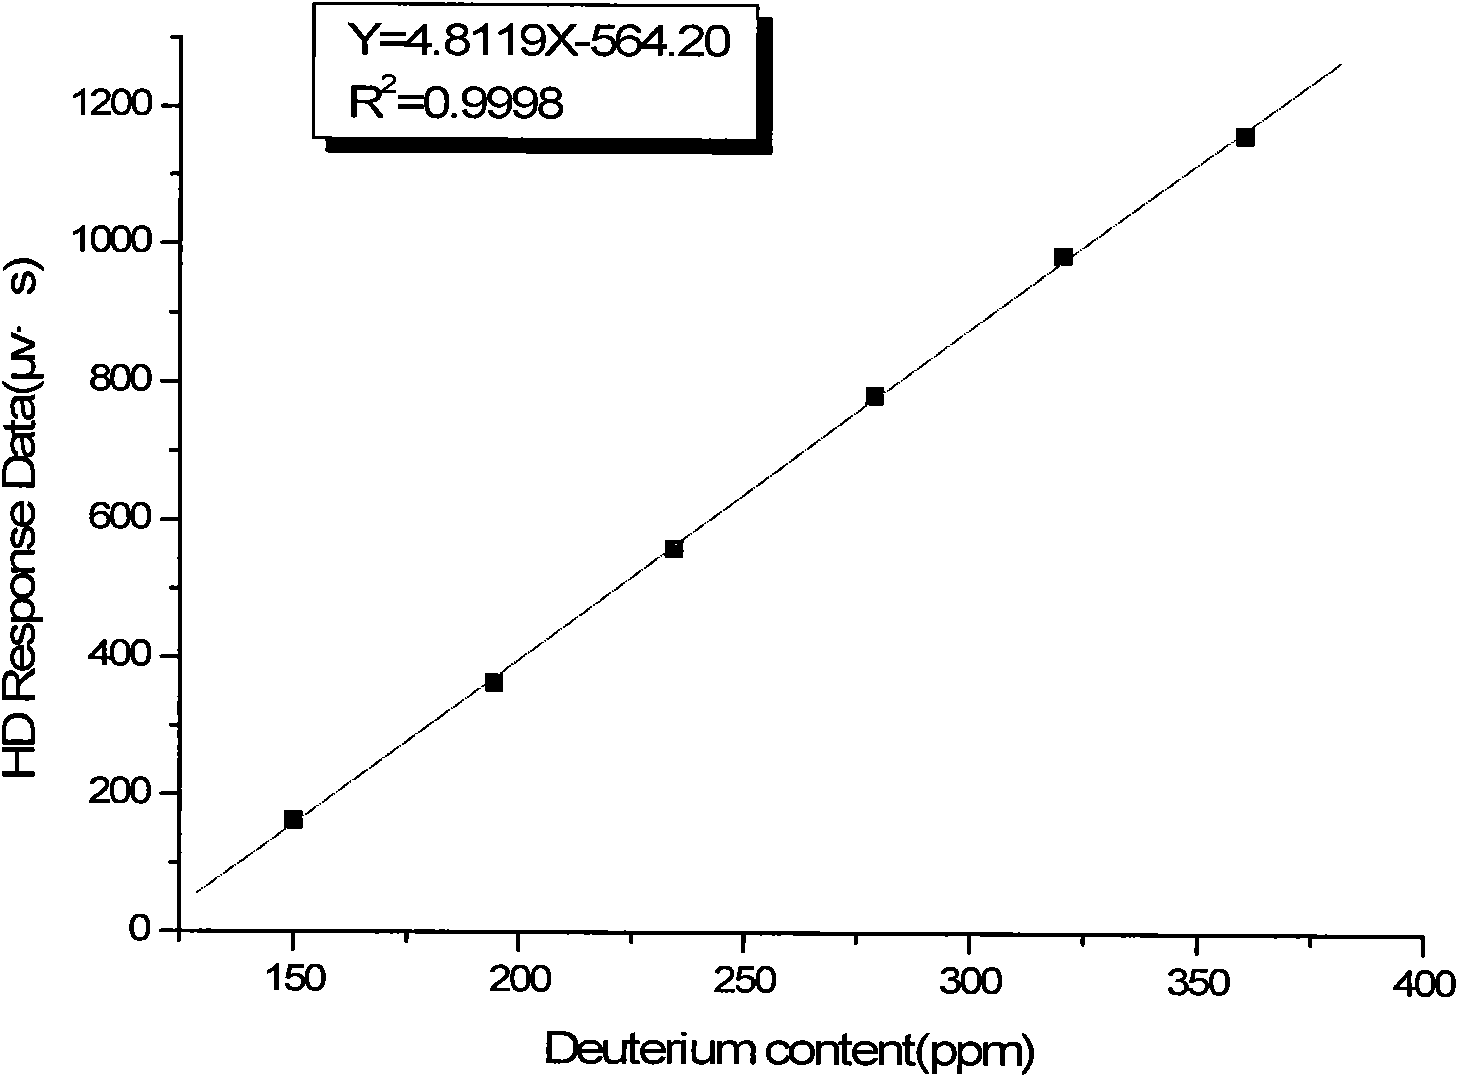 Method for detecting deuterium content in deuterium depleted water